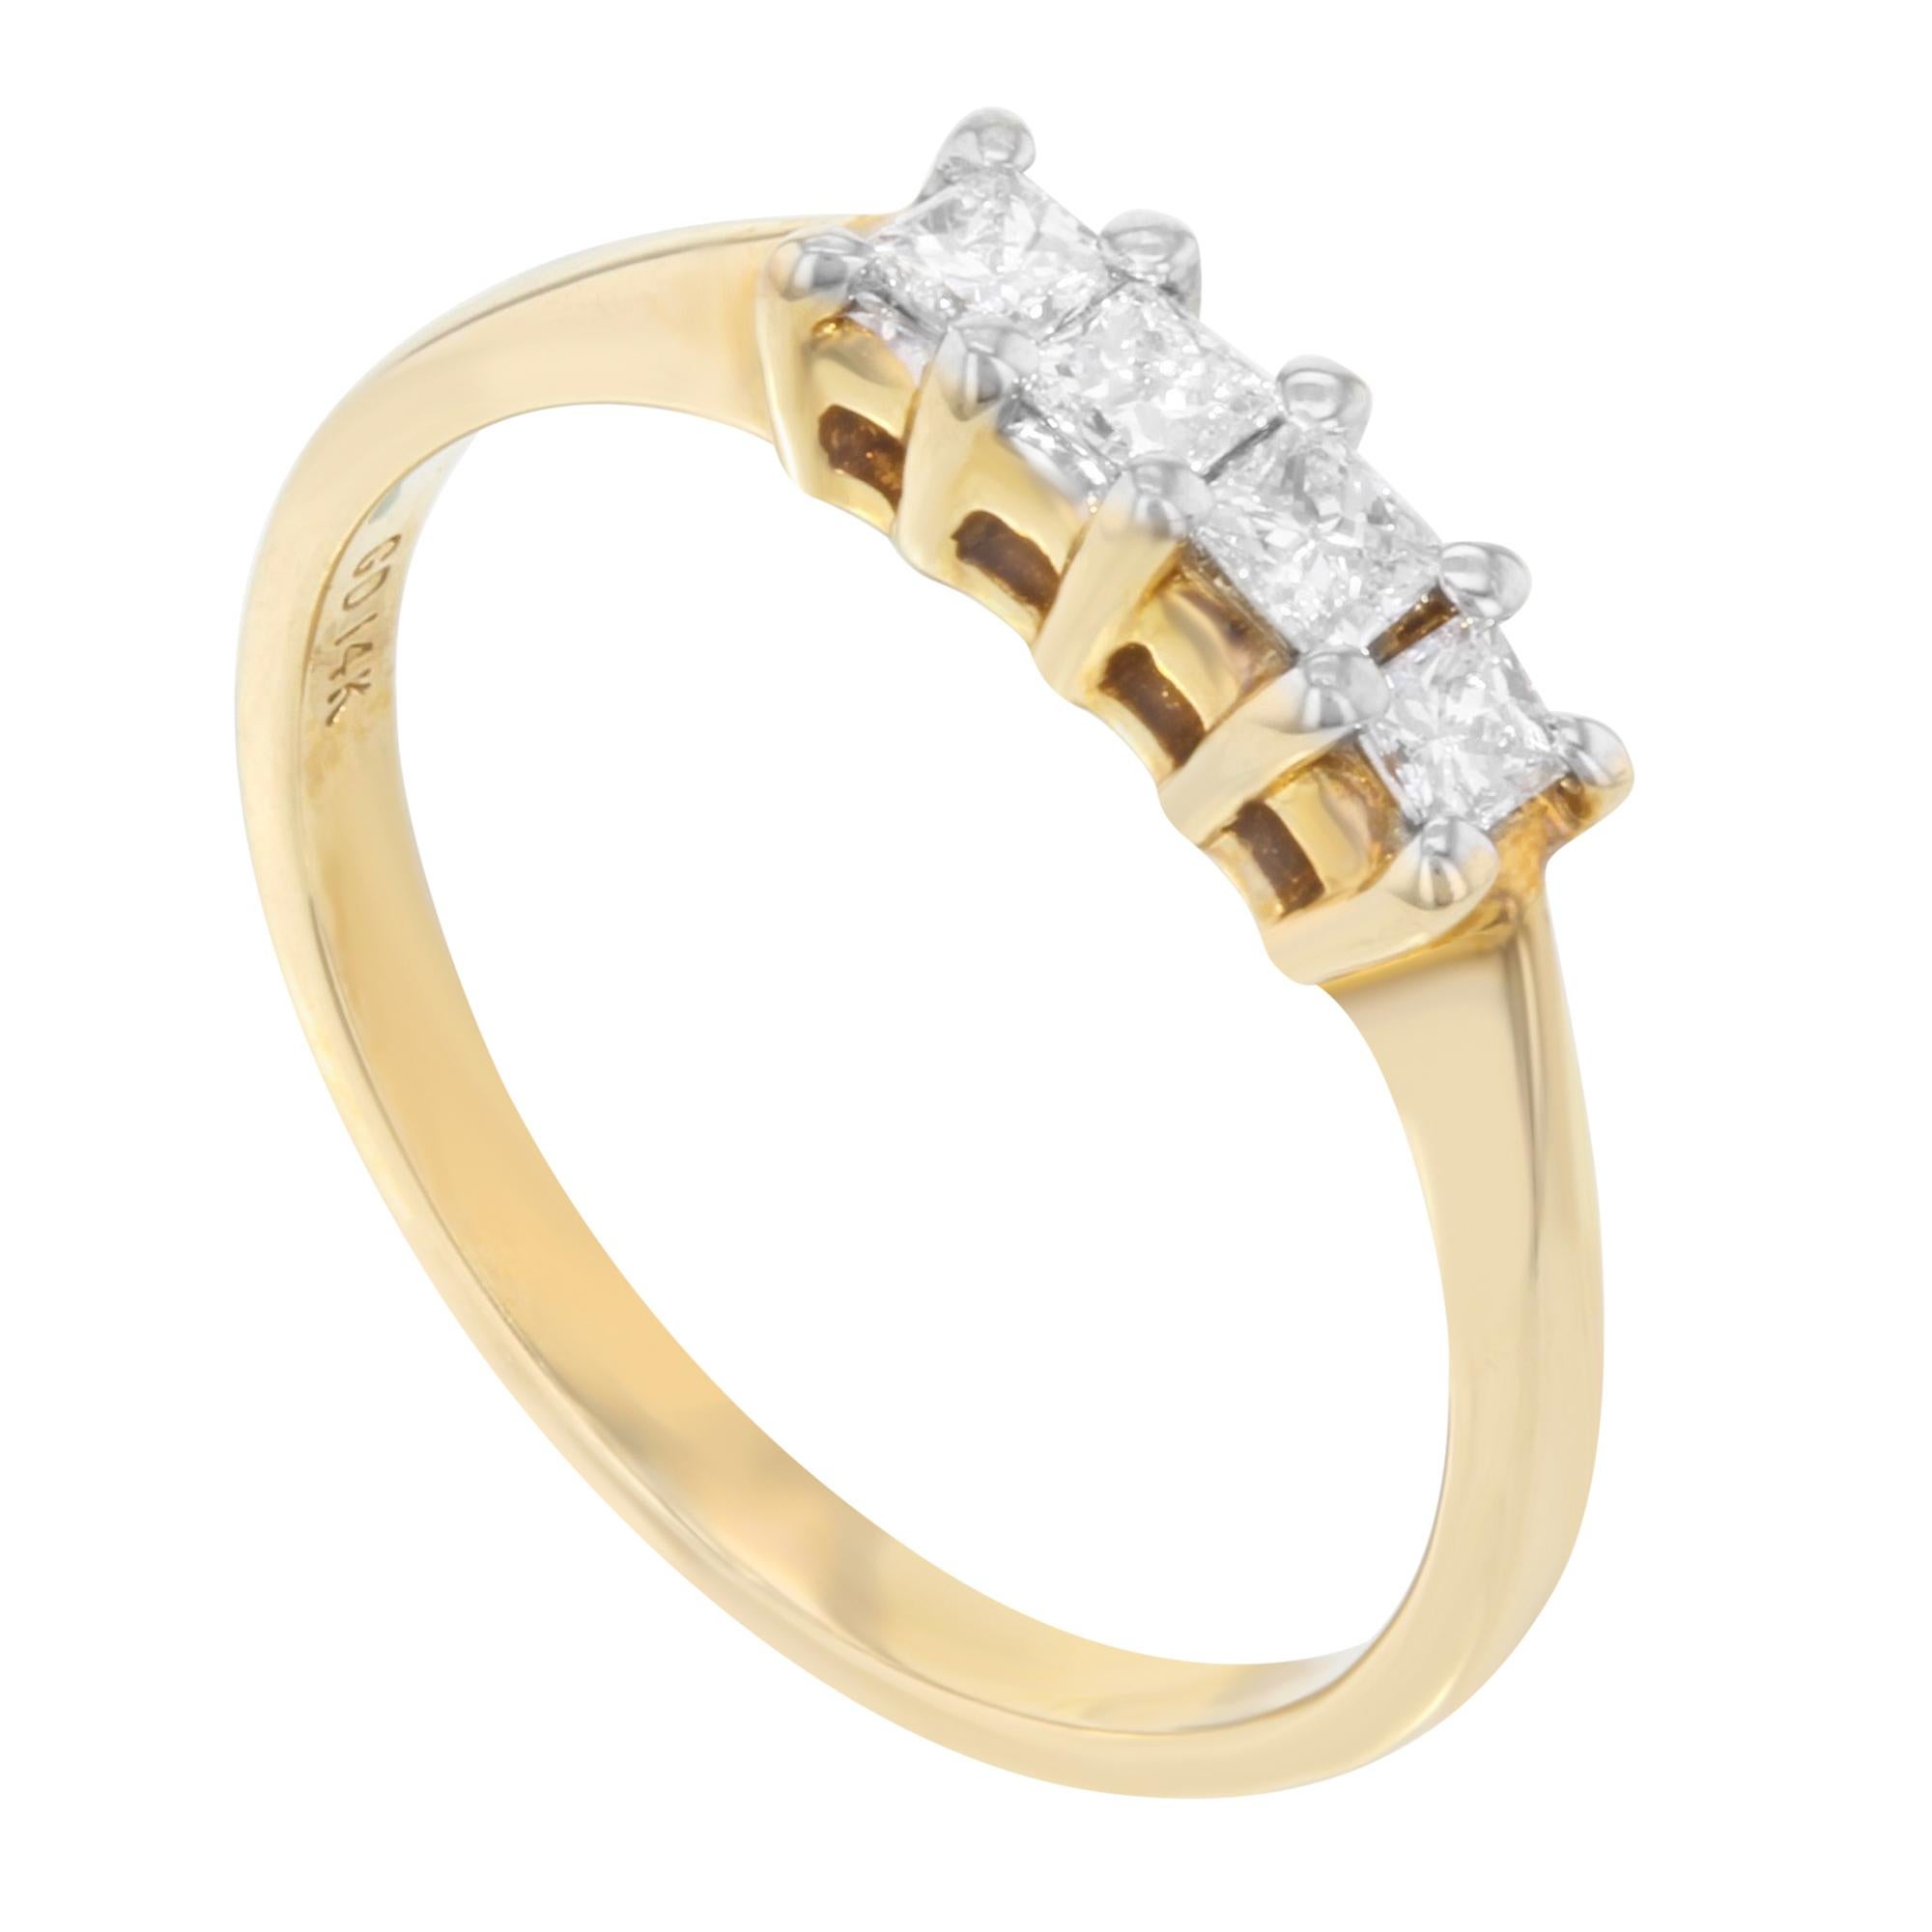 Schöner klassischer Ehering aus 14K Gelbgold. Er ist mit 4 Diamanten im Prinzessinnenschliff mit einem Gewicht von 0,50 ct besetzt. Die Größe des Rings ist 7, mit einem Gesamtgewicht von 2,2 Gramm. Er wird in einer hübschen Geschenkverpackung